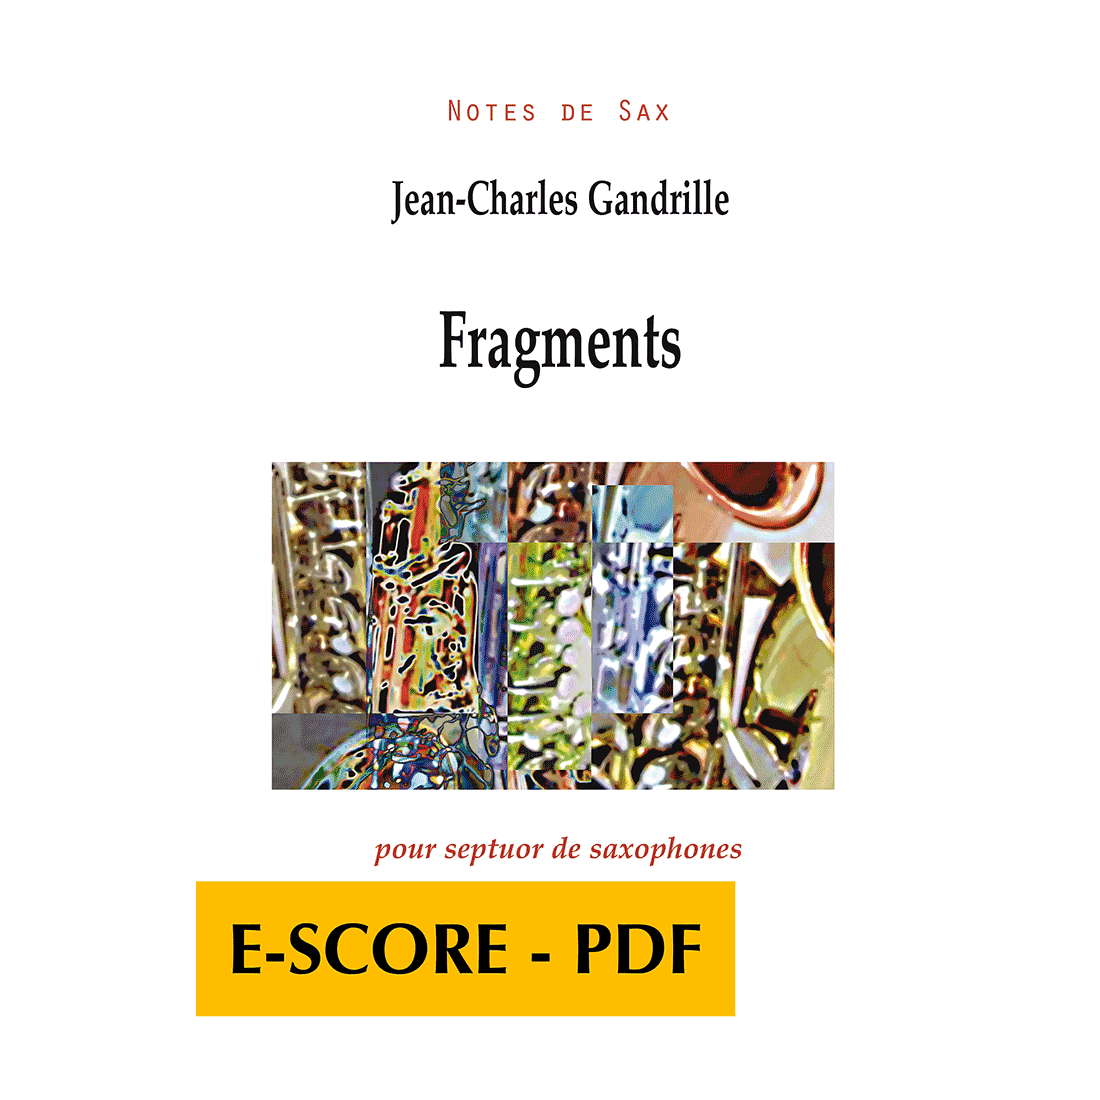 Fragments pour septuor de saxophones - E-score PDF